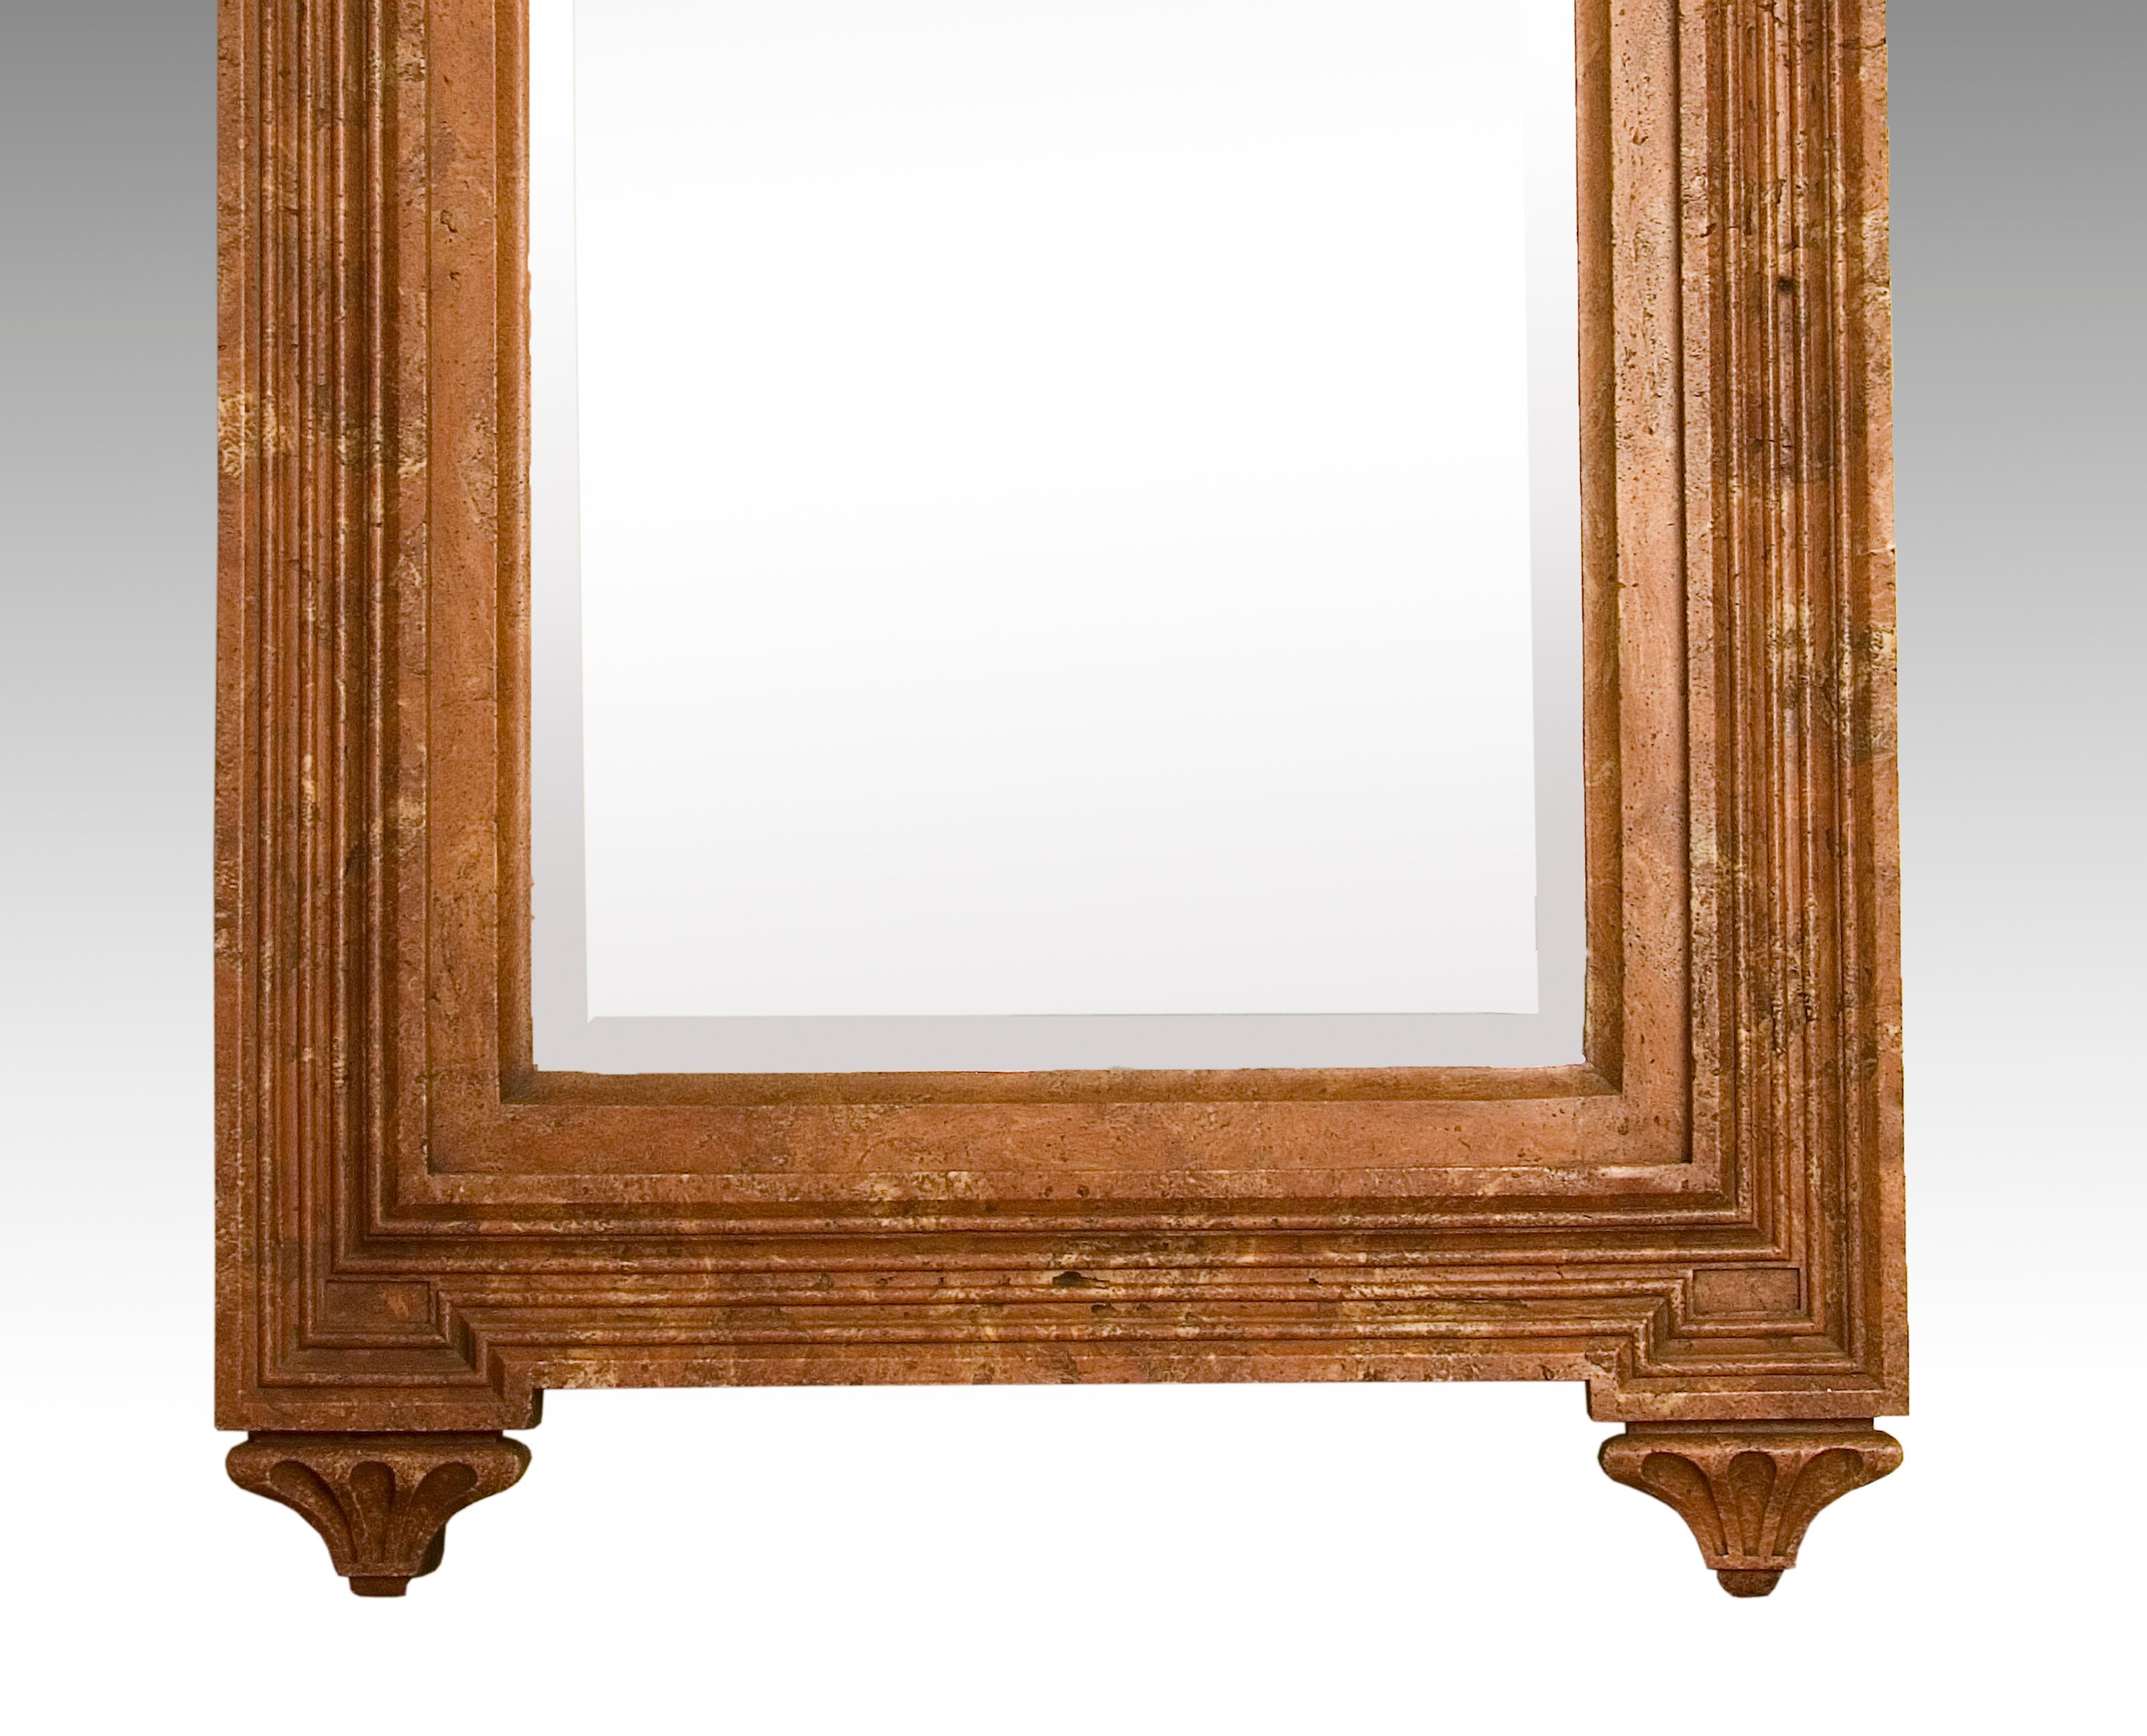 Miroir de style Renaissance en poussière de marbre.
Le miroir rectangulaire avec une courbure semi-circulaire dans sa partie supérieure a été mis en valeur suivant ces mêmes lignes avec un cadre fini en poudre de marbre. Les éléments décoratifs